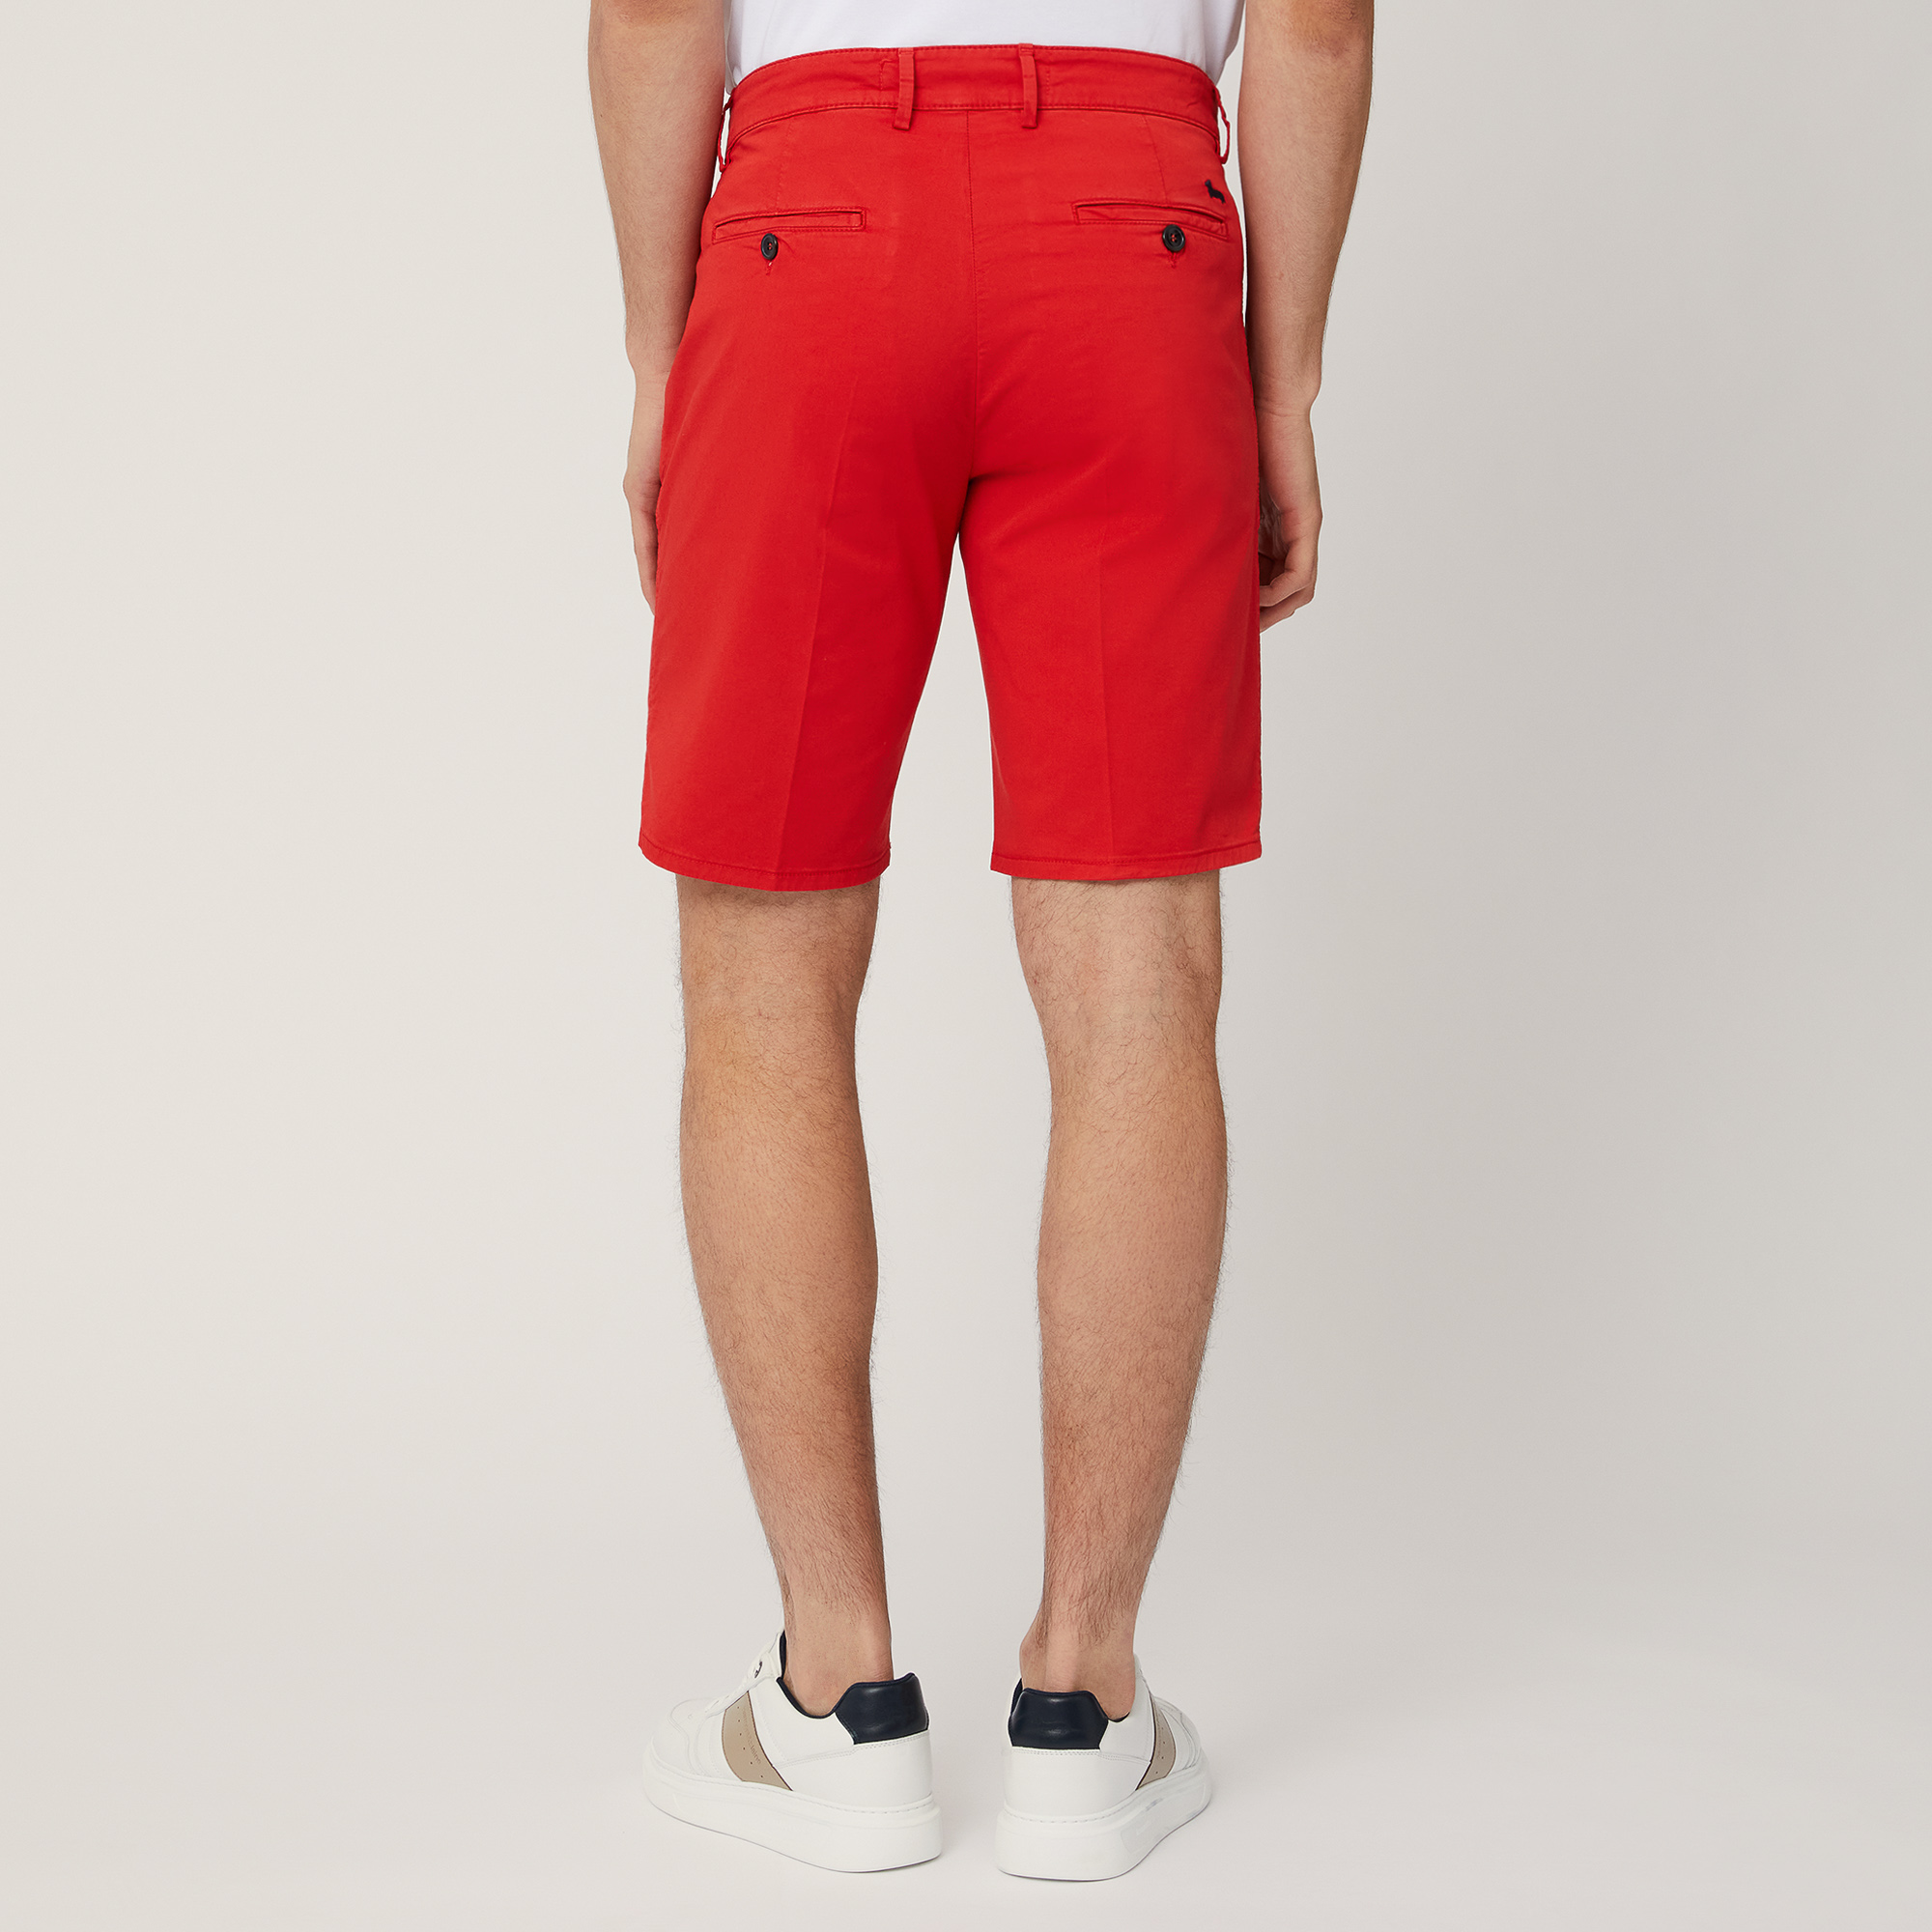 Regular Fit Bermuda Shorts, Light Red, large image number 1